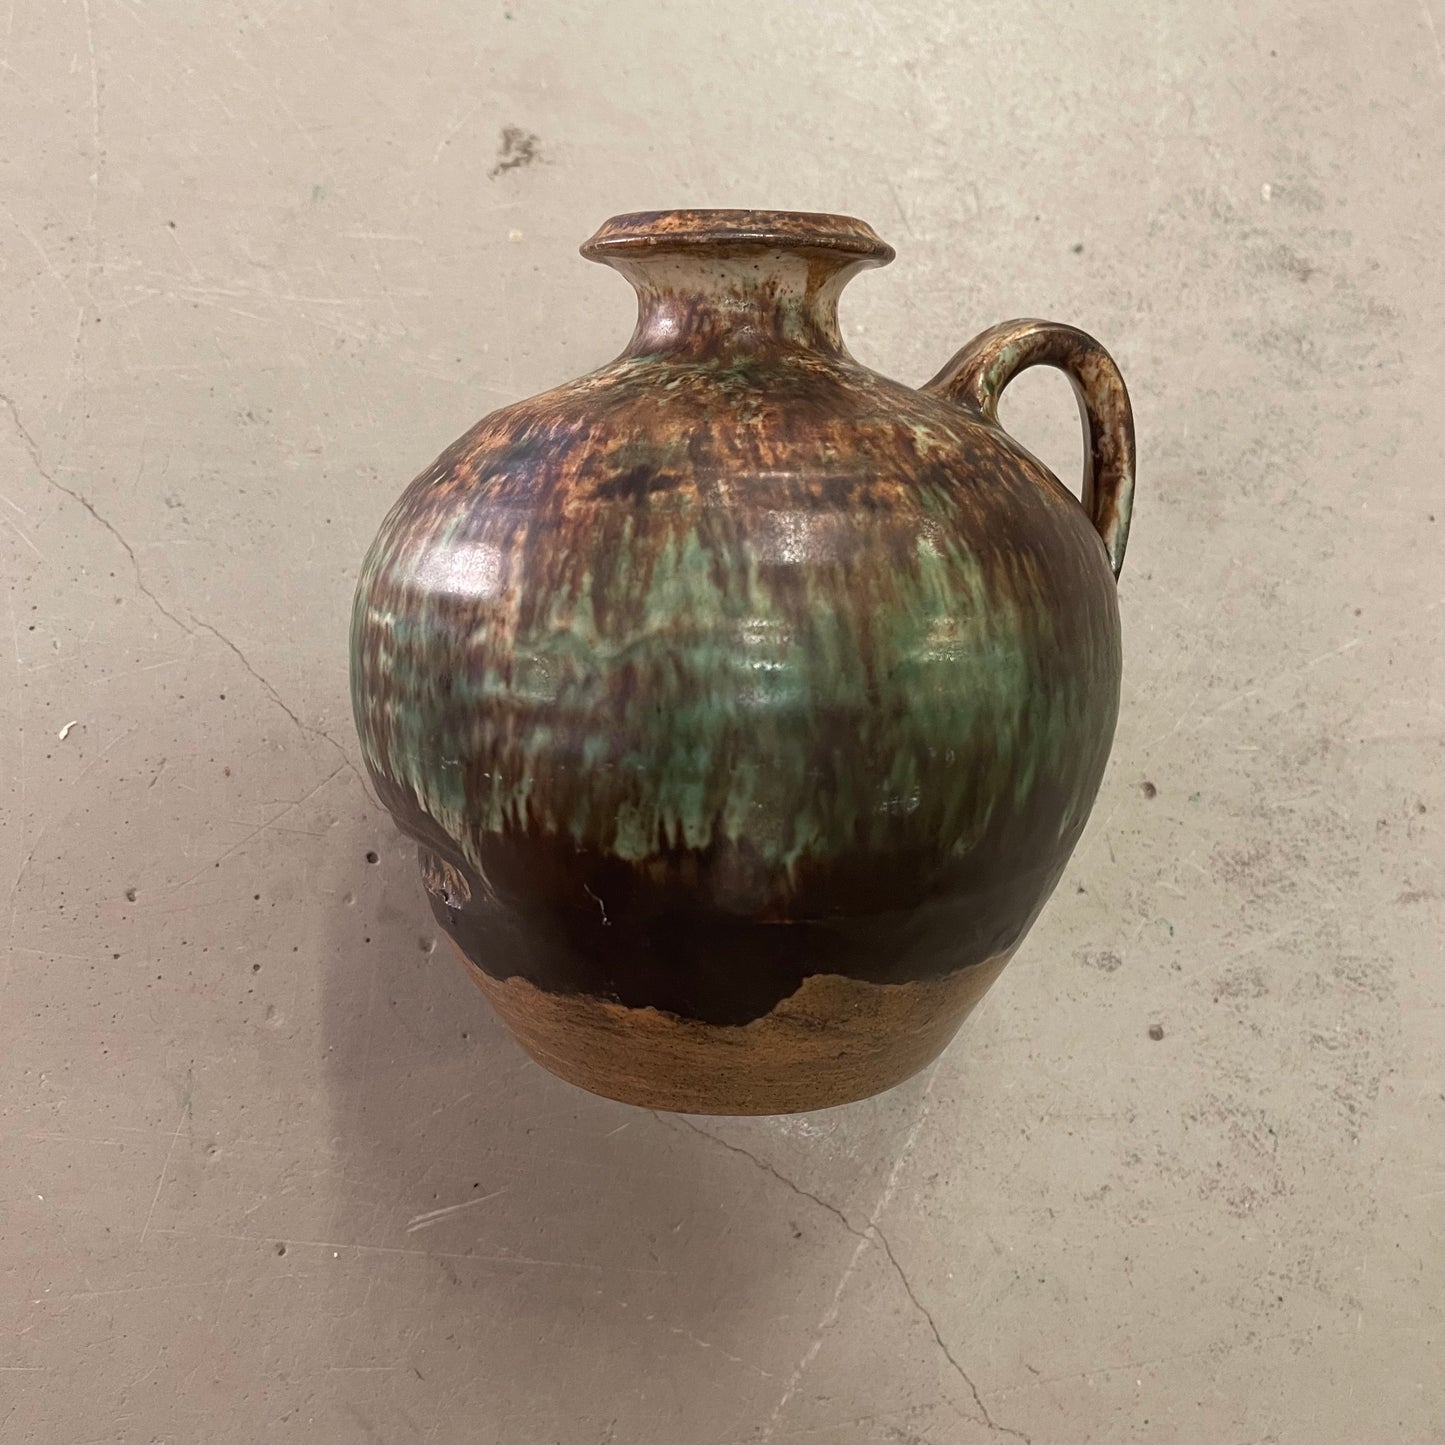 Etienne van Wonterghem Keramik vase med hank i smukke grønne og brune jordfarver